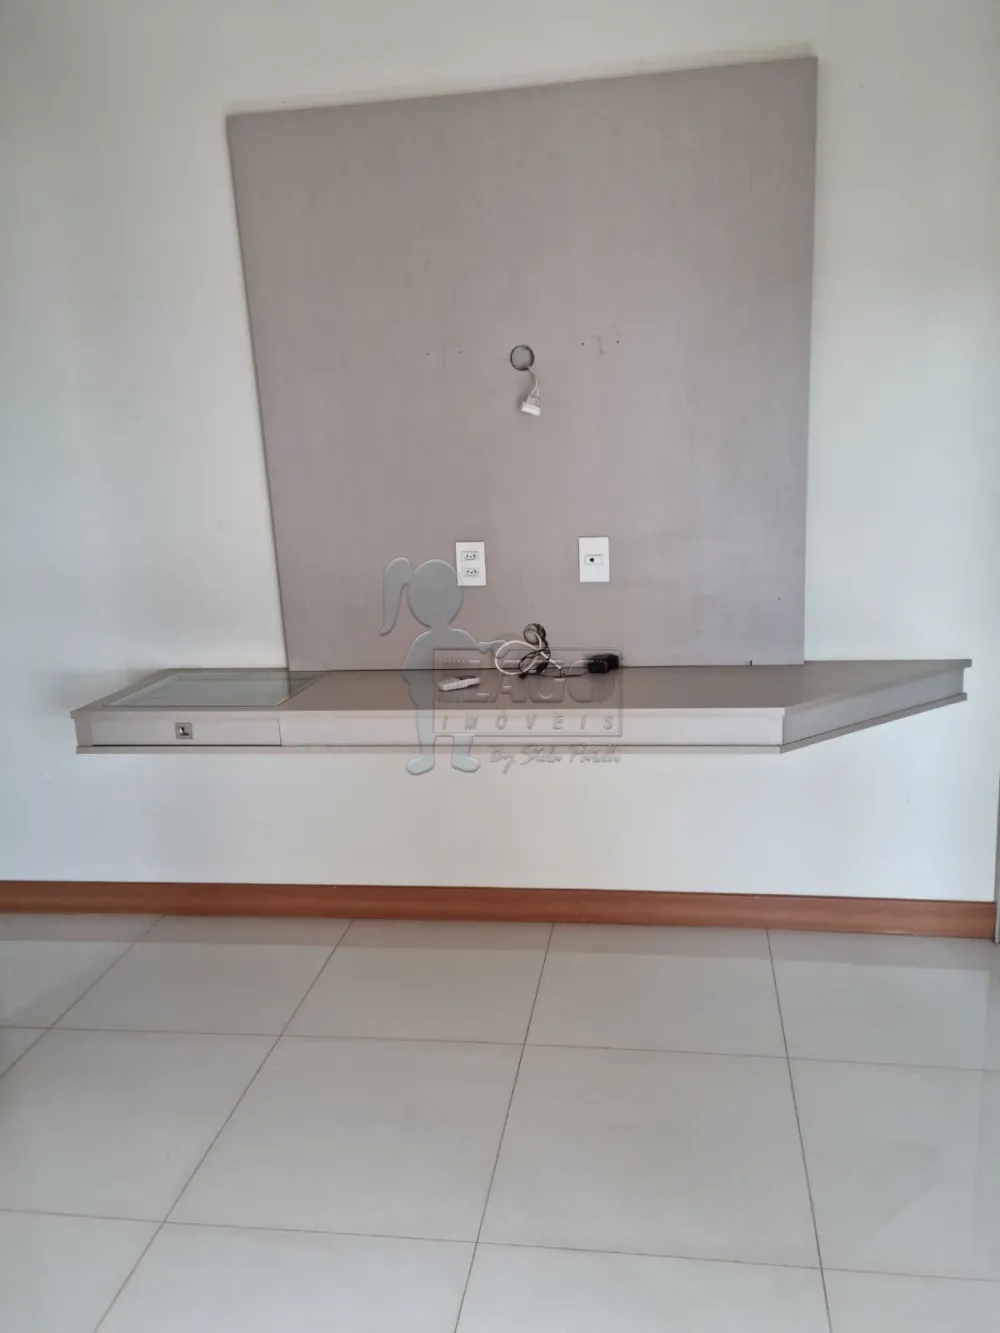 Comprar Apartamentos / Padrão em Ribeirão Preto R$ 1.200.000,00 - Foto 13